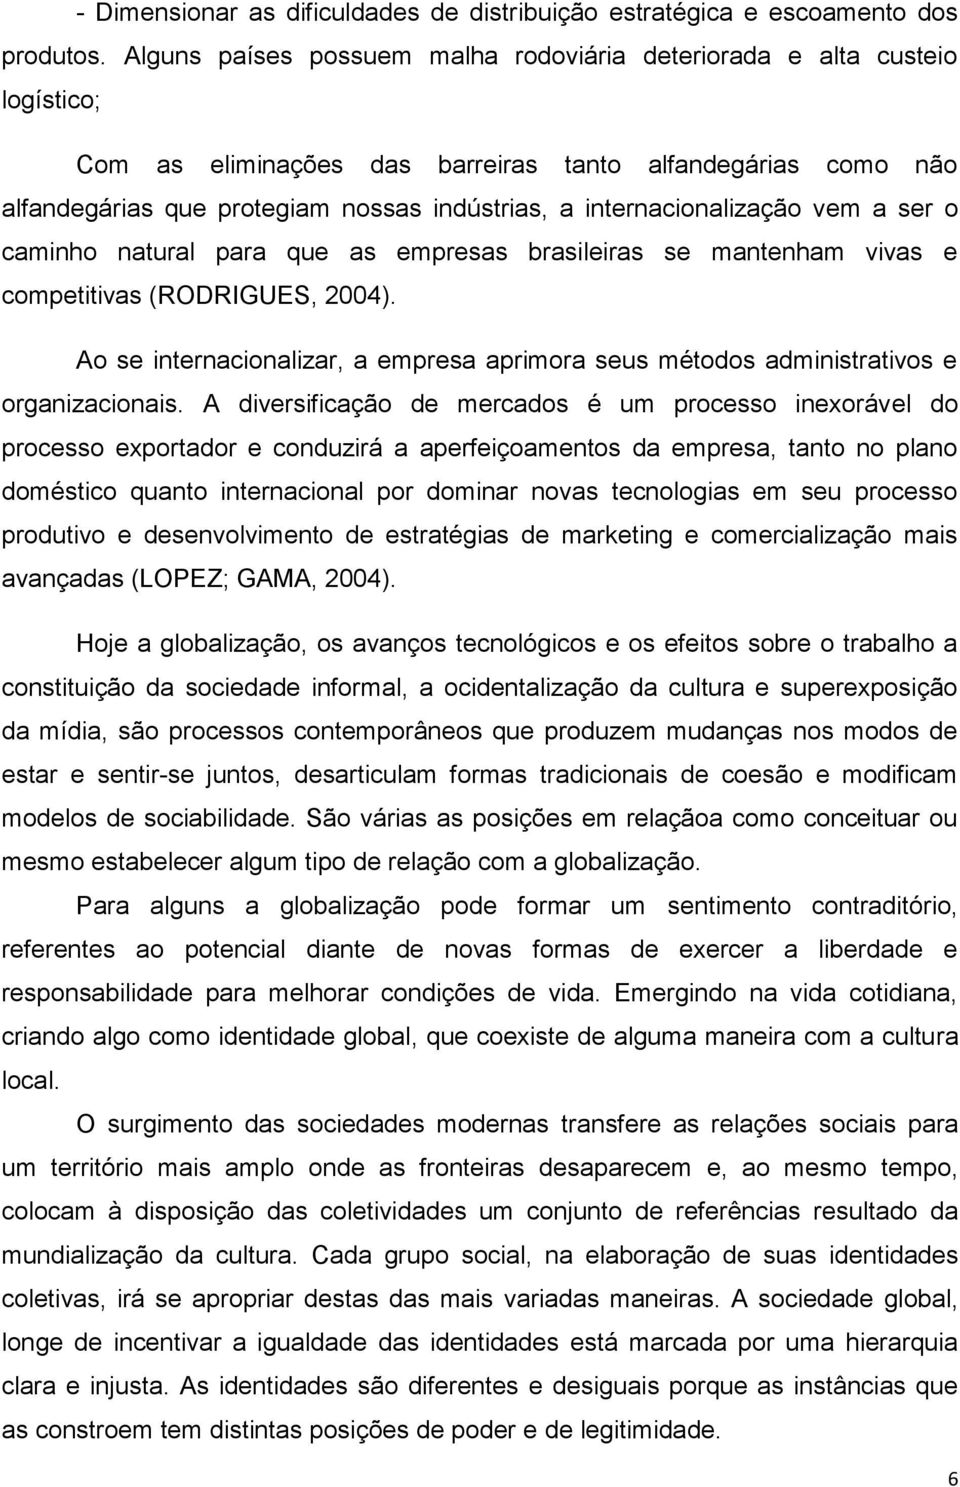 internacionalização vem a ser o caminho natural para que as empresas brasileiras se mantenham vivas e competitivas (RODRIGUES, 2004).